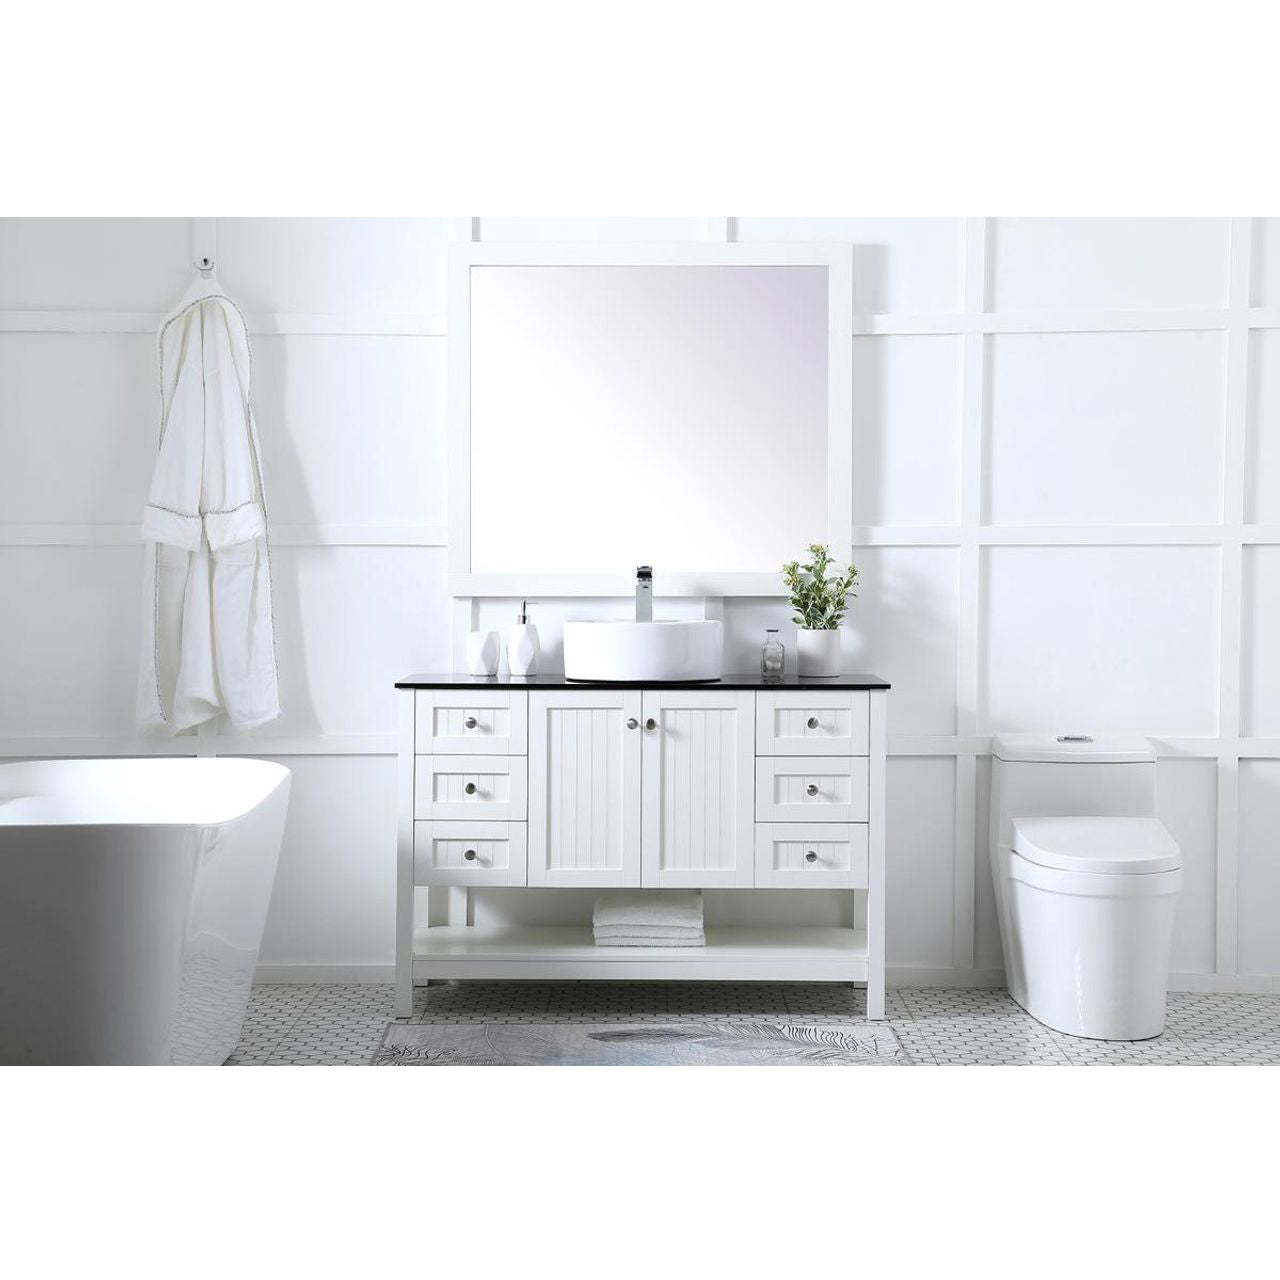 VF16248WH 48" Vessel Sink Bathroom Vanity in White